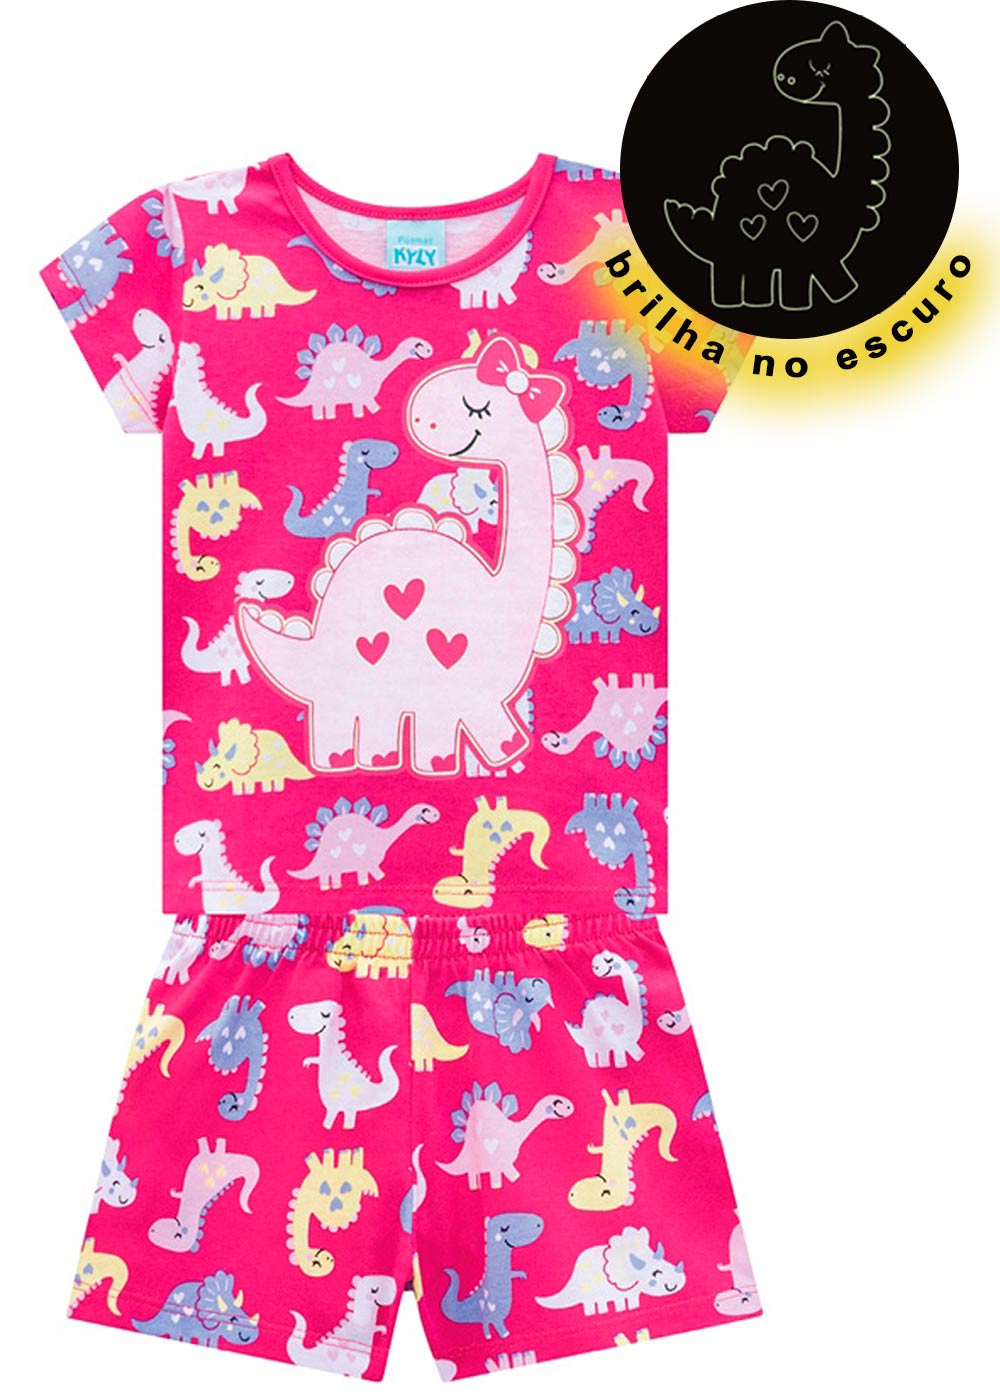 Pijama Infantil Feminino Verão Rosa Dino Brilha no Escuro - Kyly